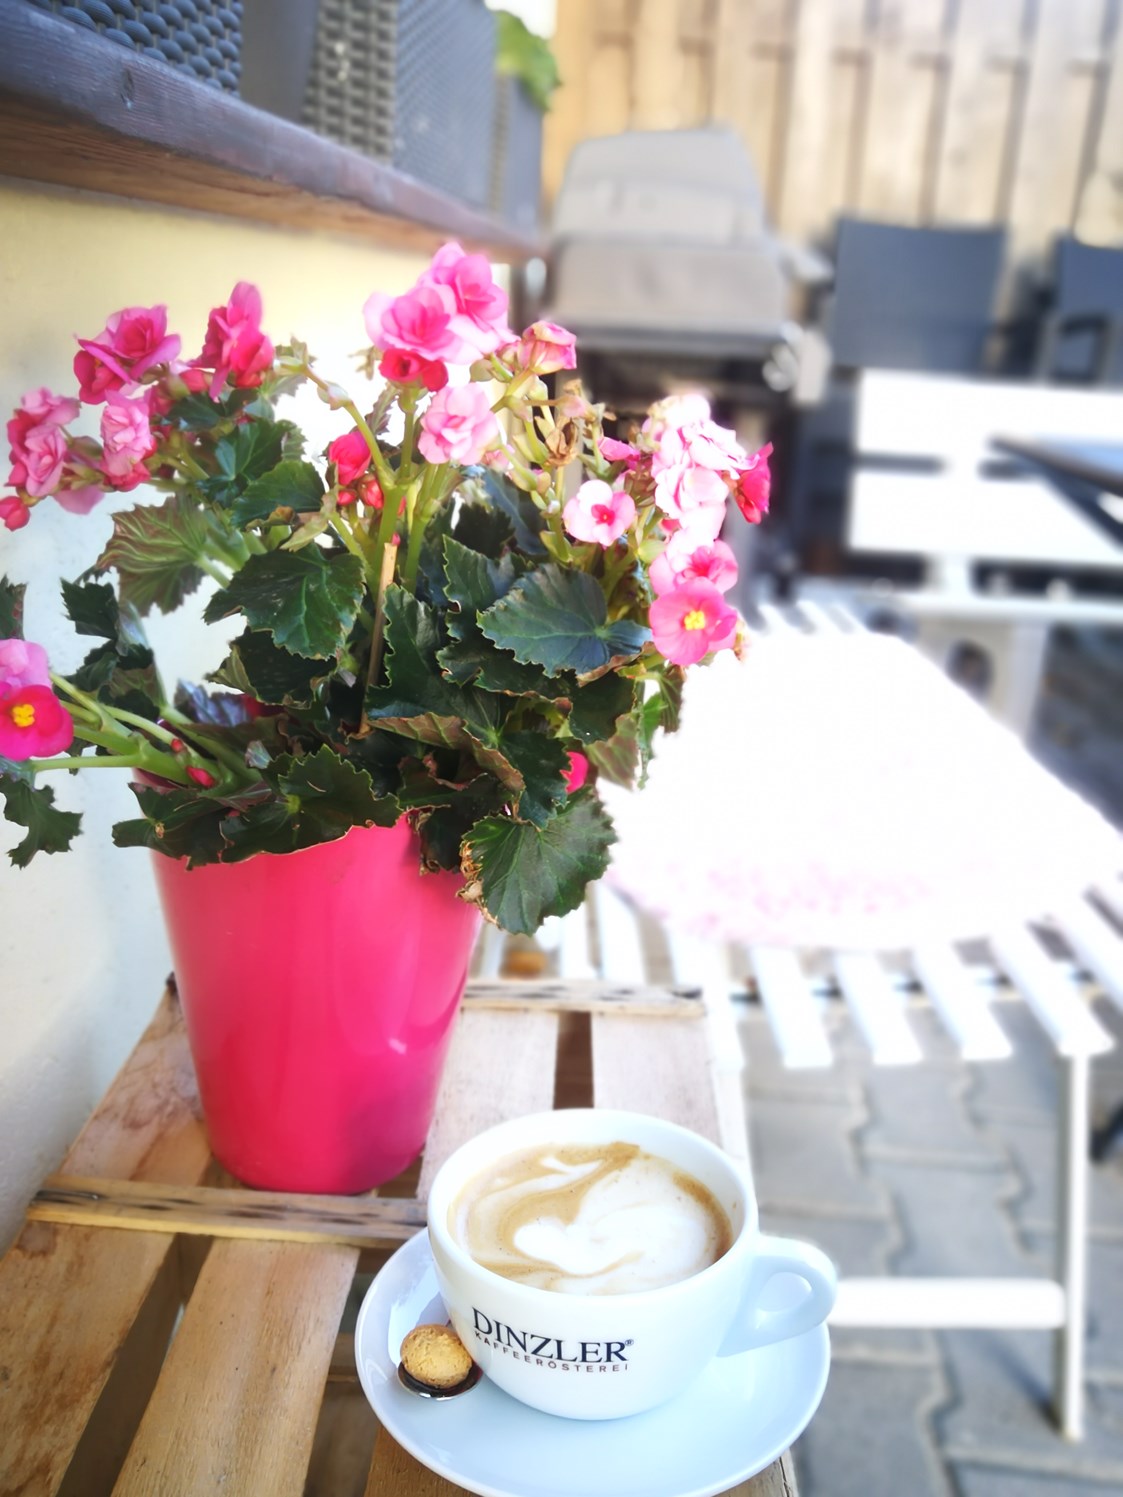 vegetarisches veganes Restaurant: feinsten Dinzler Kaffee auf unserer Terrasse geniesen - Rosinante